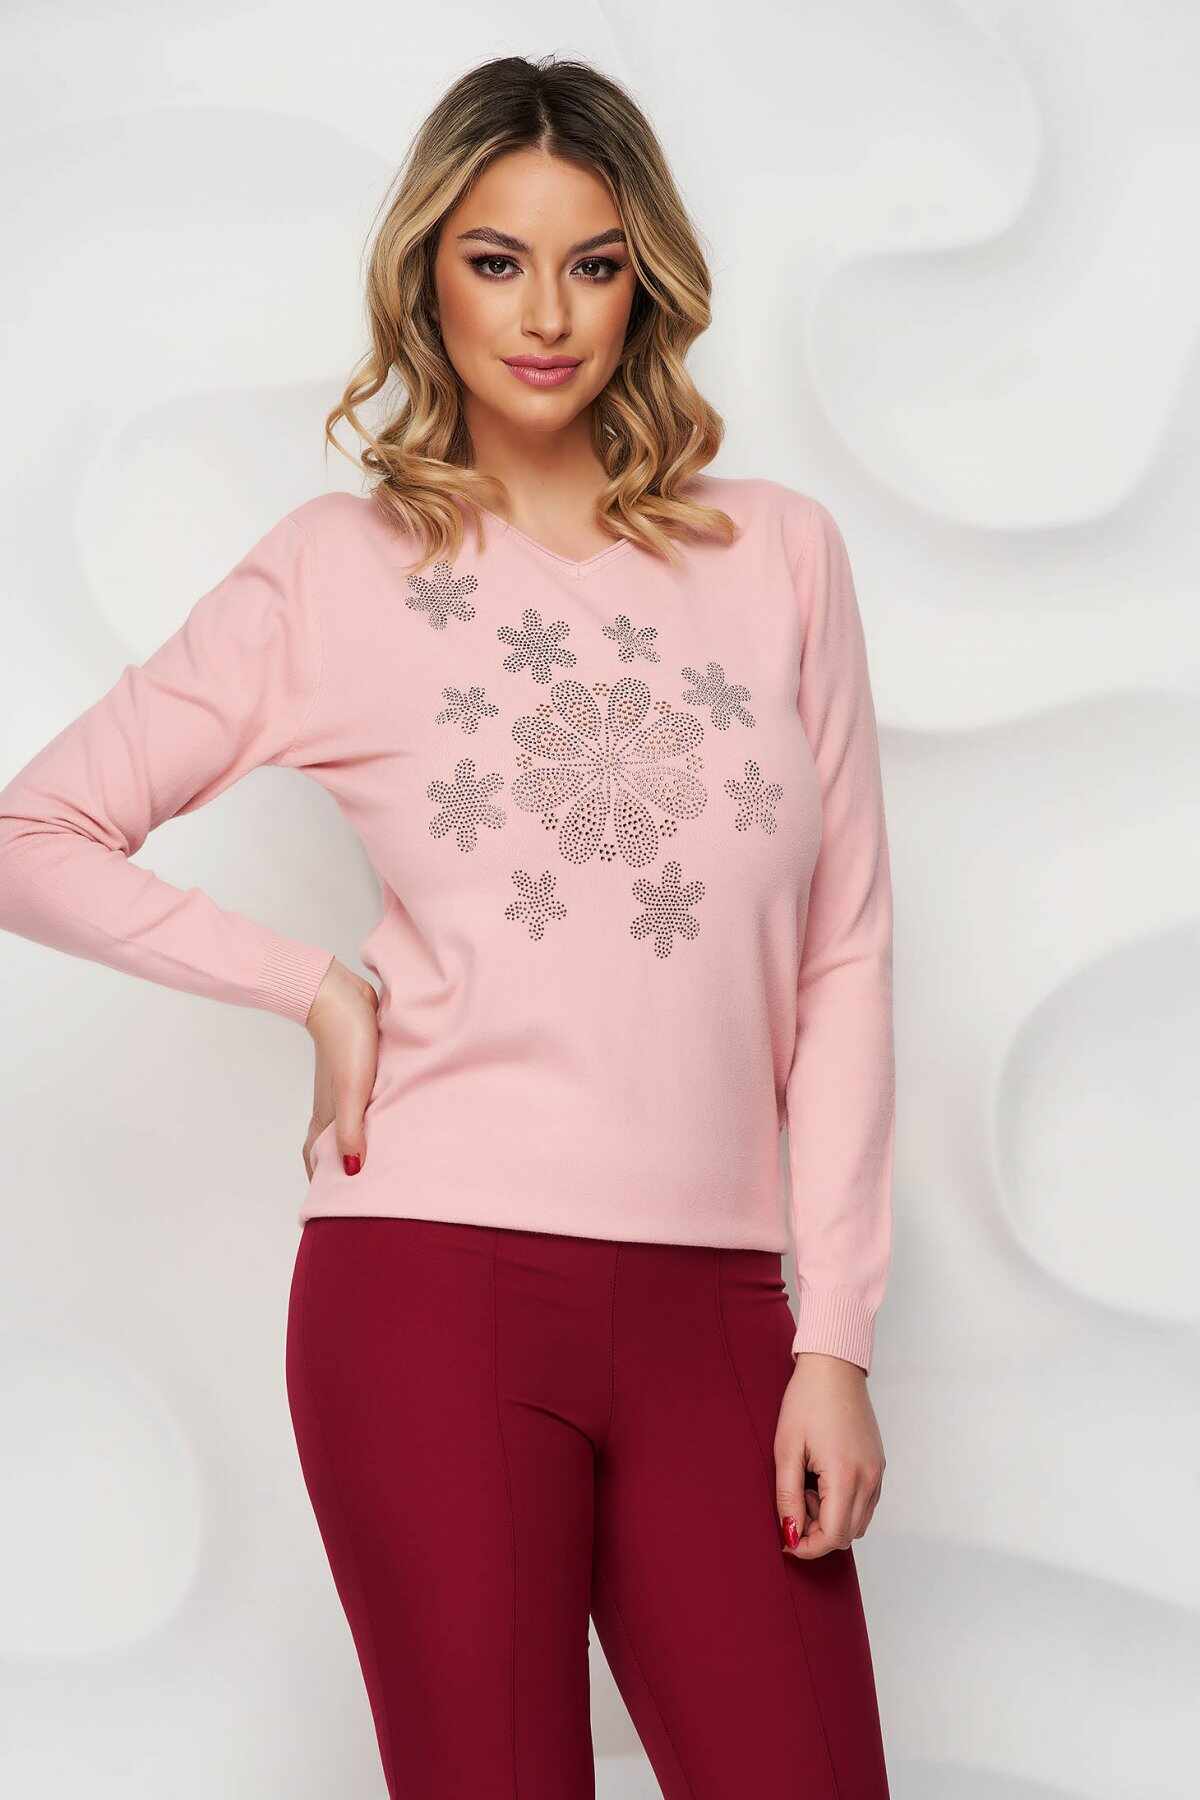 Bluza dama SunShine roz tricotata cu aplicatii cu pietre strass